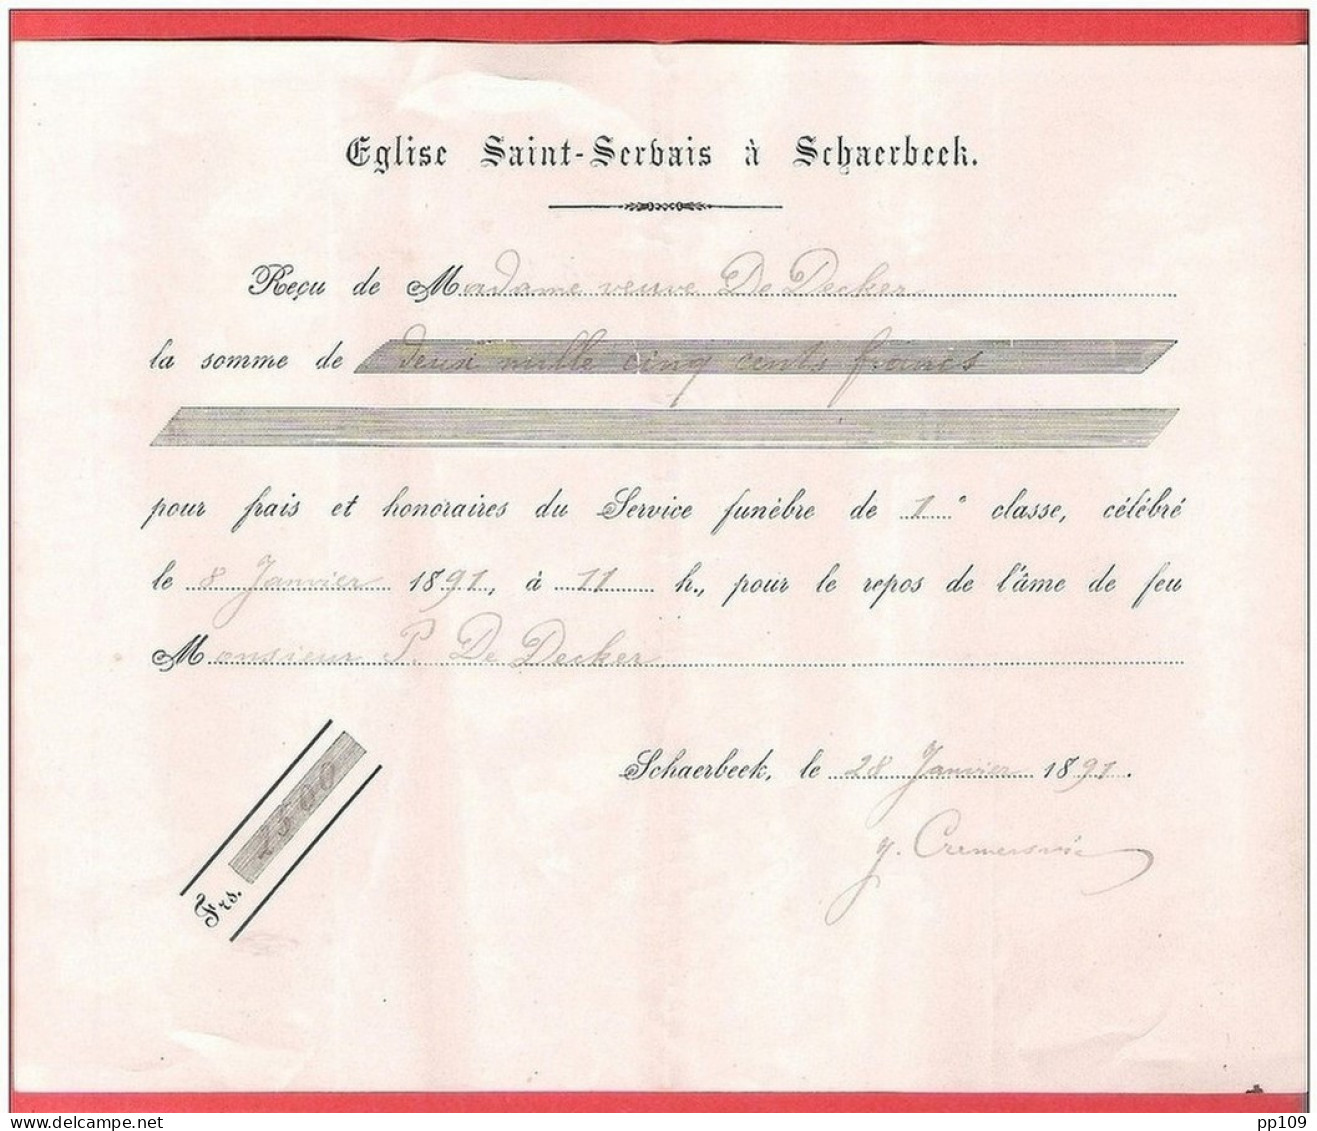 SCHAERBEEK  Eglise SAINT SERVAIS  Reçu Pour Frais De Service Funèbre  1891 - Documenten